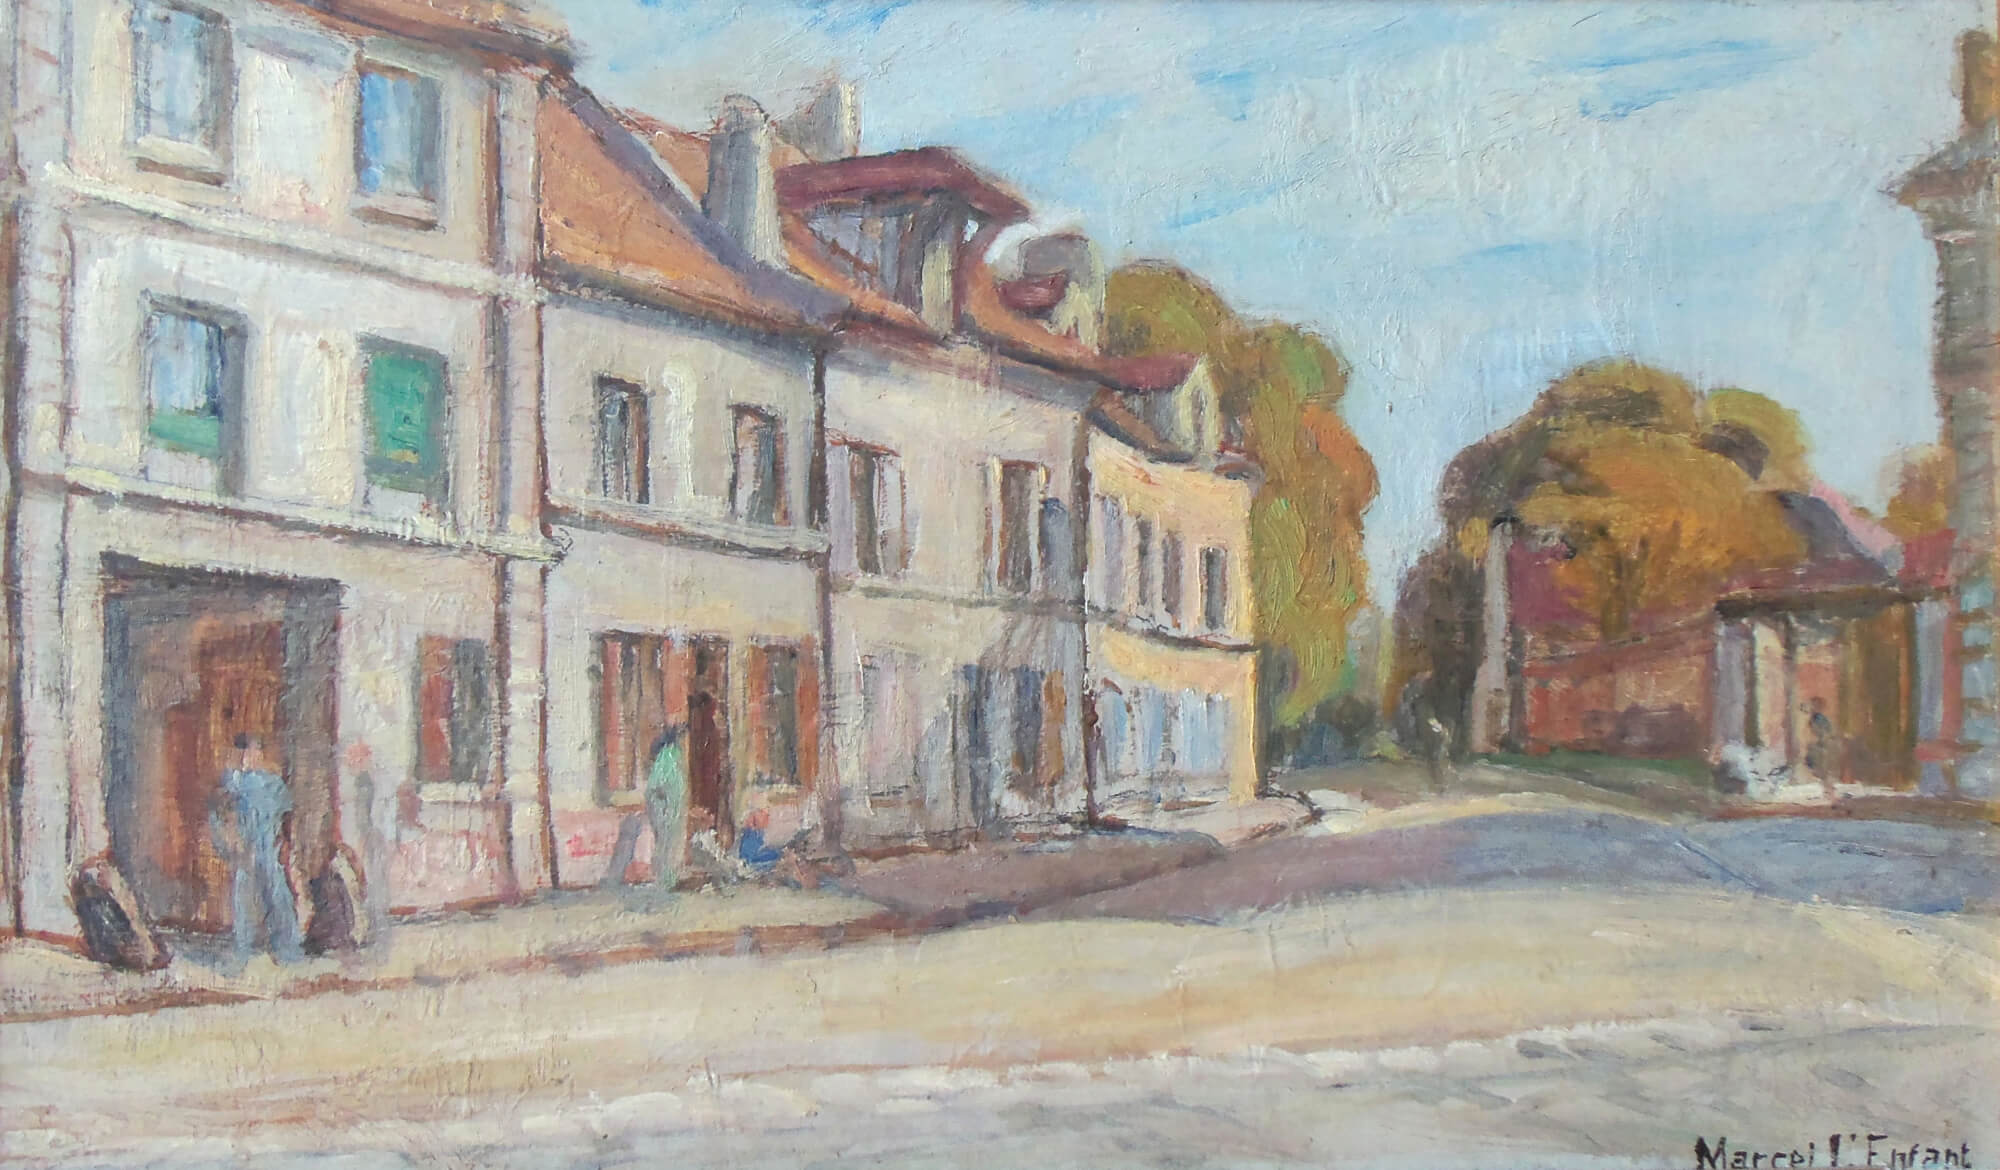 Une des rues du village où habitait le peintre. Elle existe toujours, mais ne ressemble plus du tout à ce tableau.